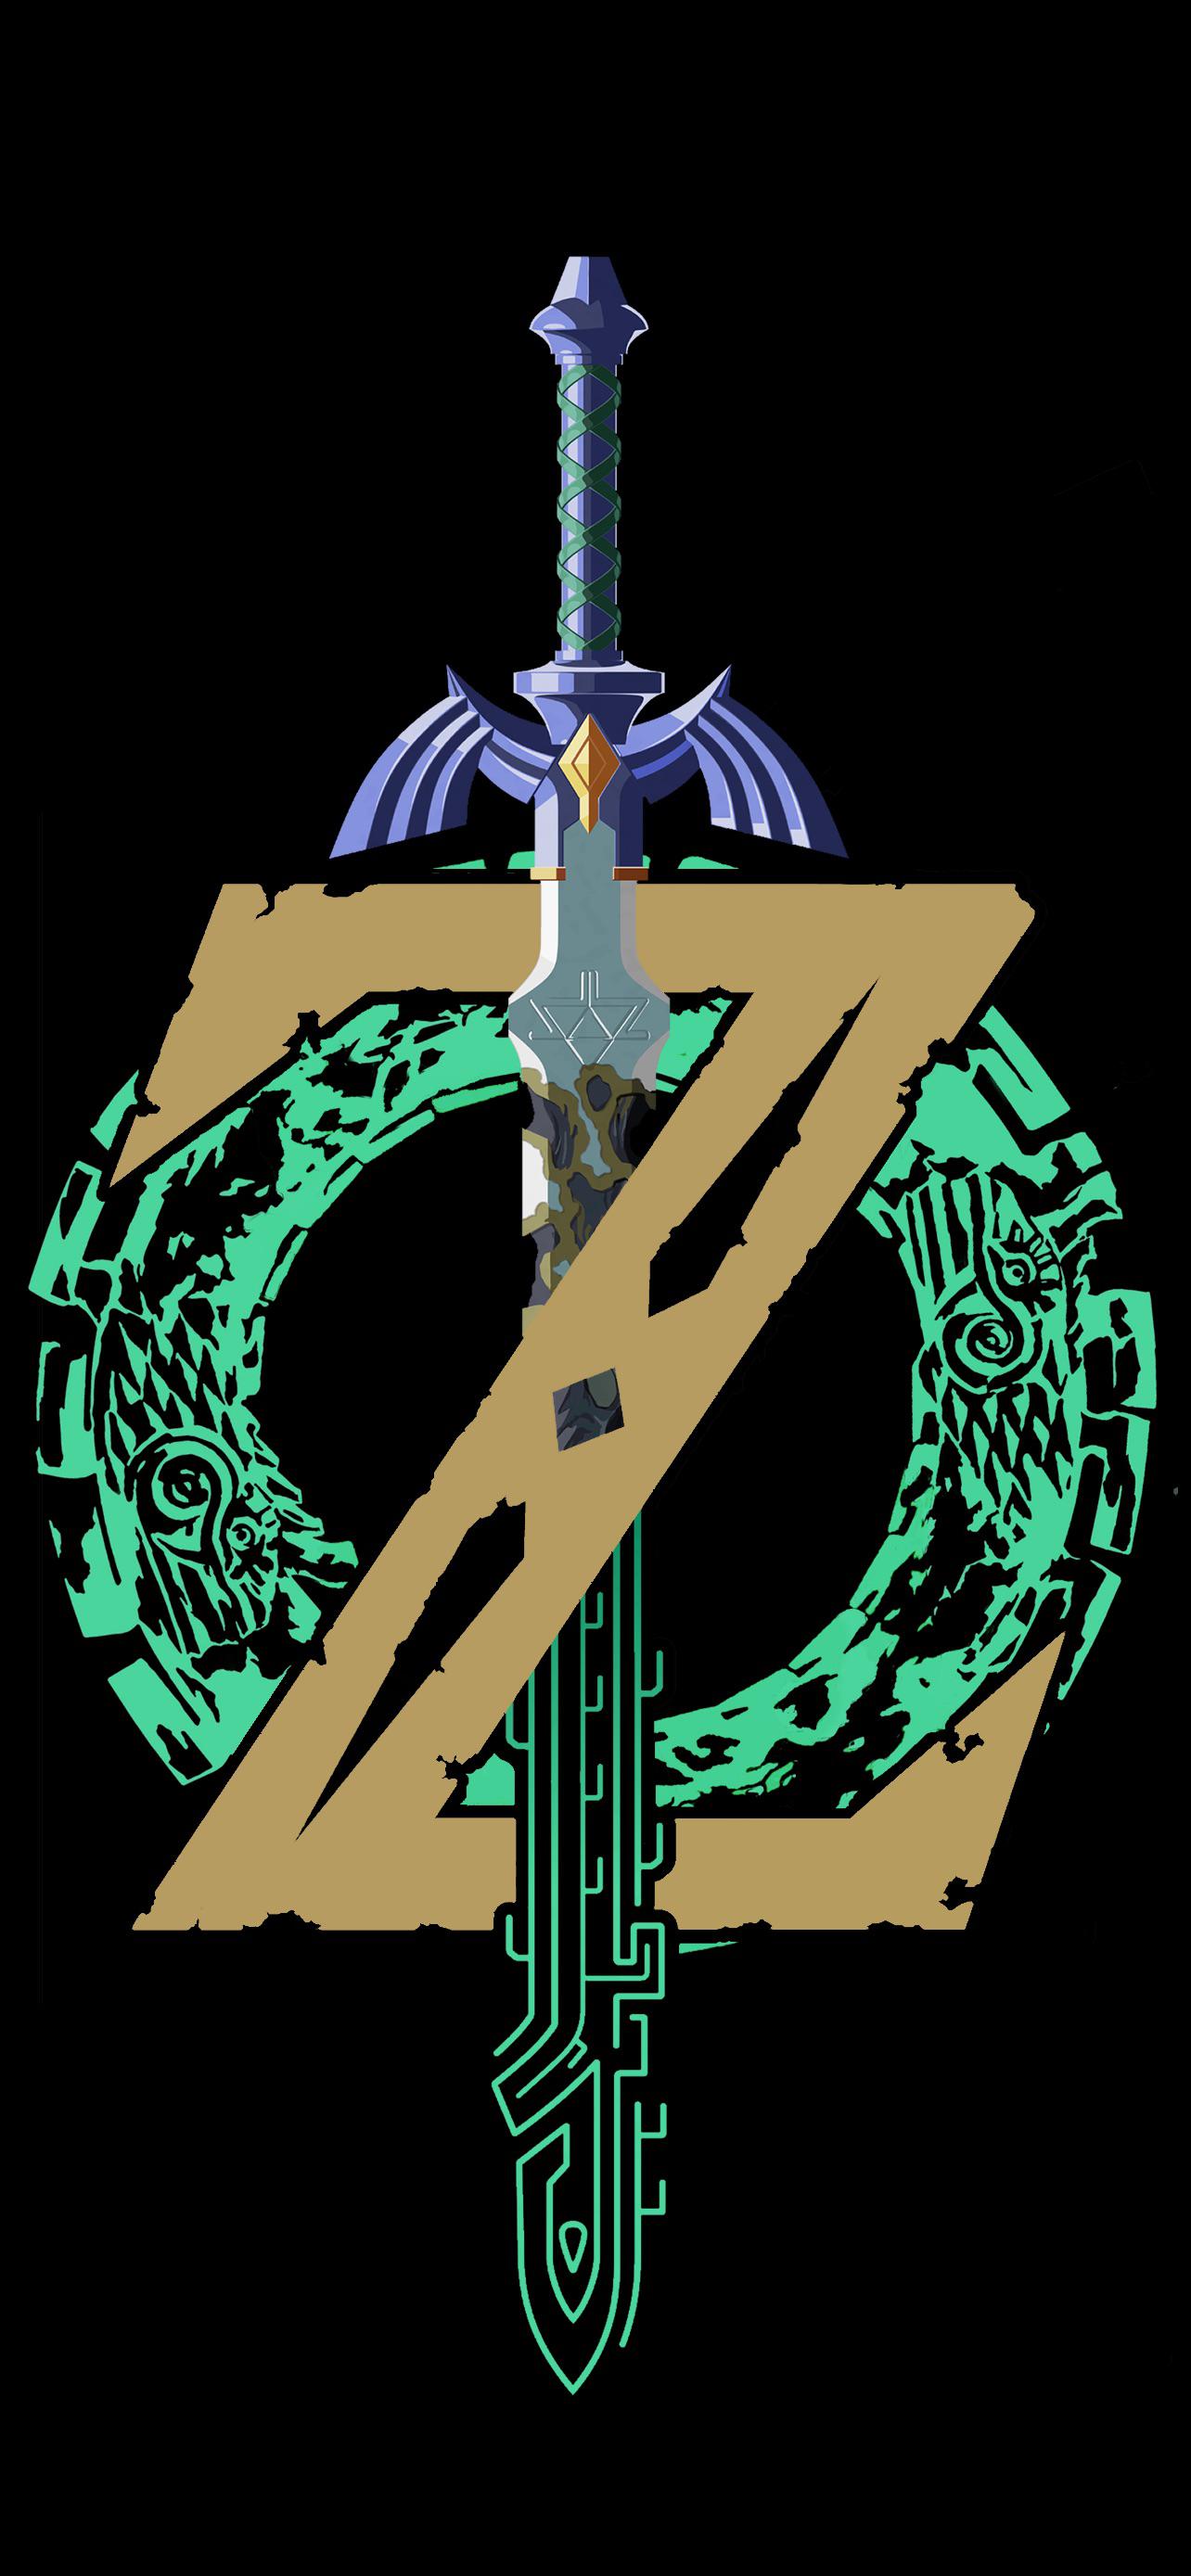 TotK Zelda: Tears of the Kingdom wallpaper for phone / tablet